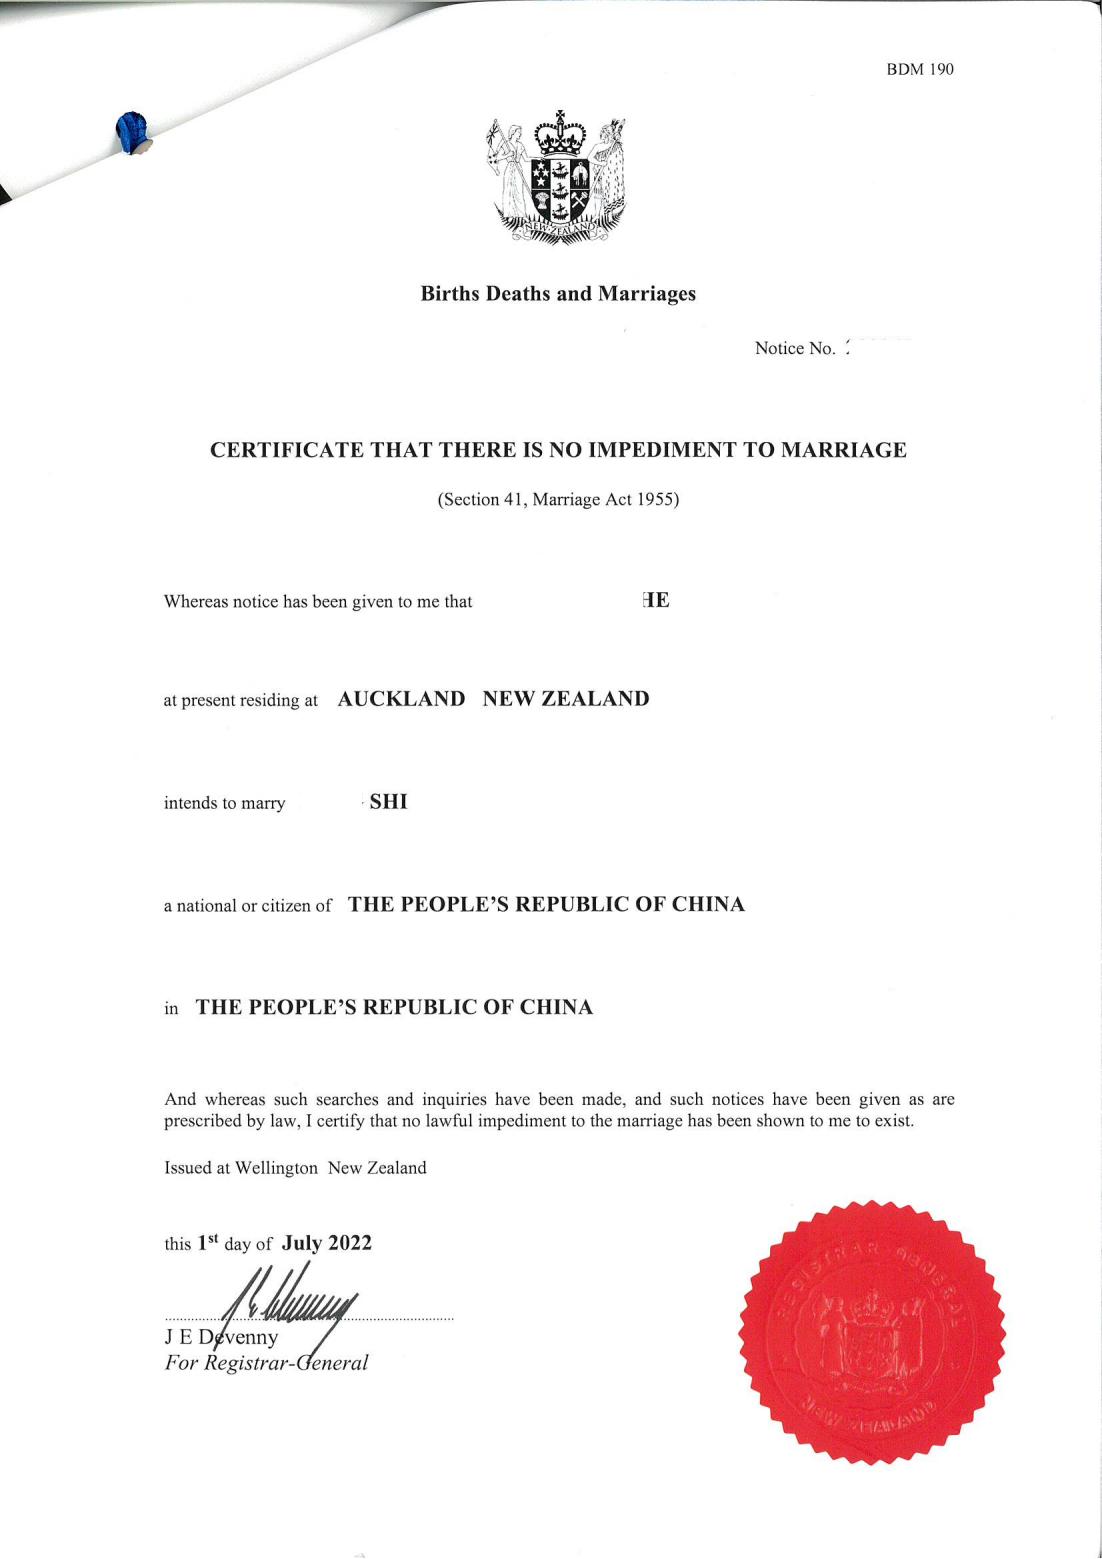 新西兰无配偶/无婚姻障碍证明CONI申请及公证海牙认证使领馆认证